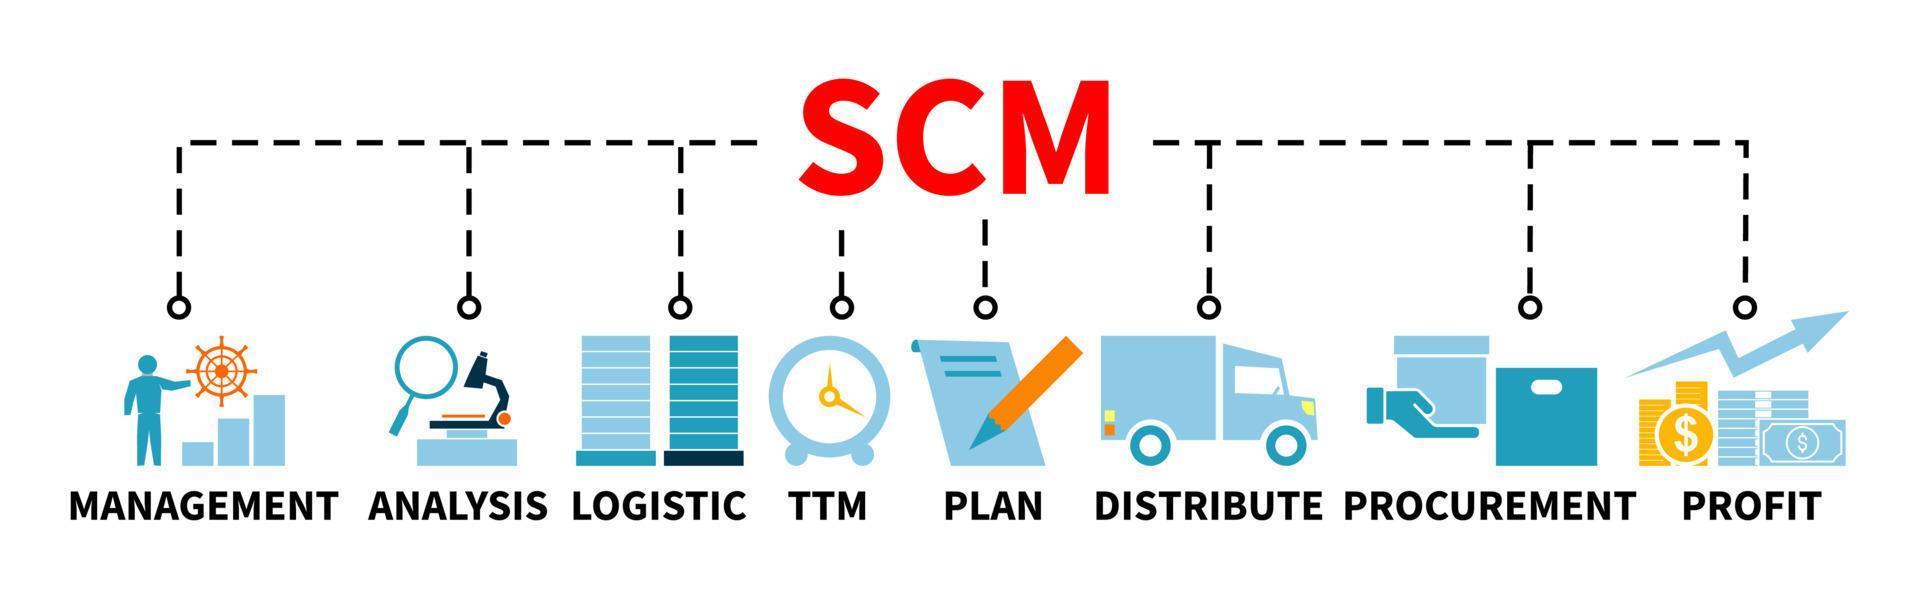 زنجیره تامین-scm-فن آوا سیستم